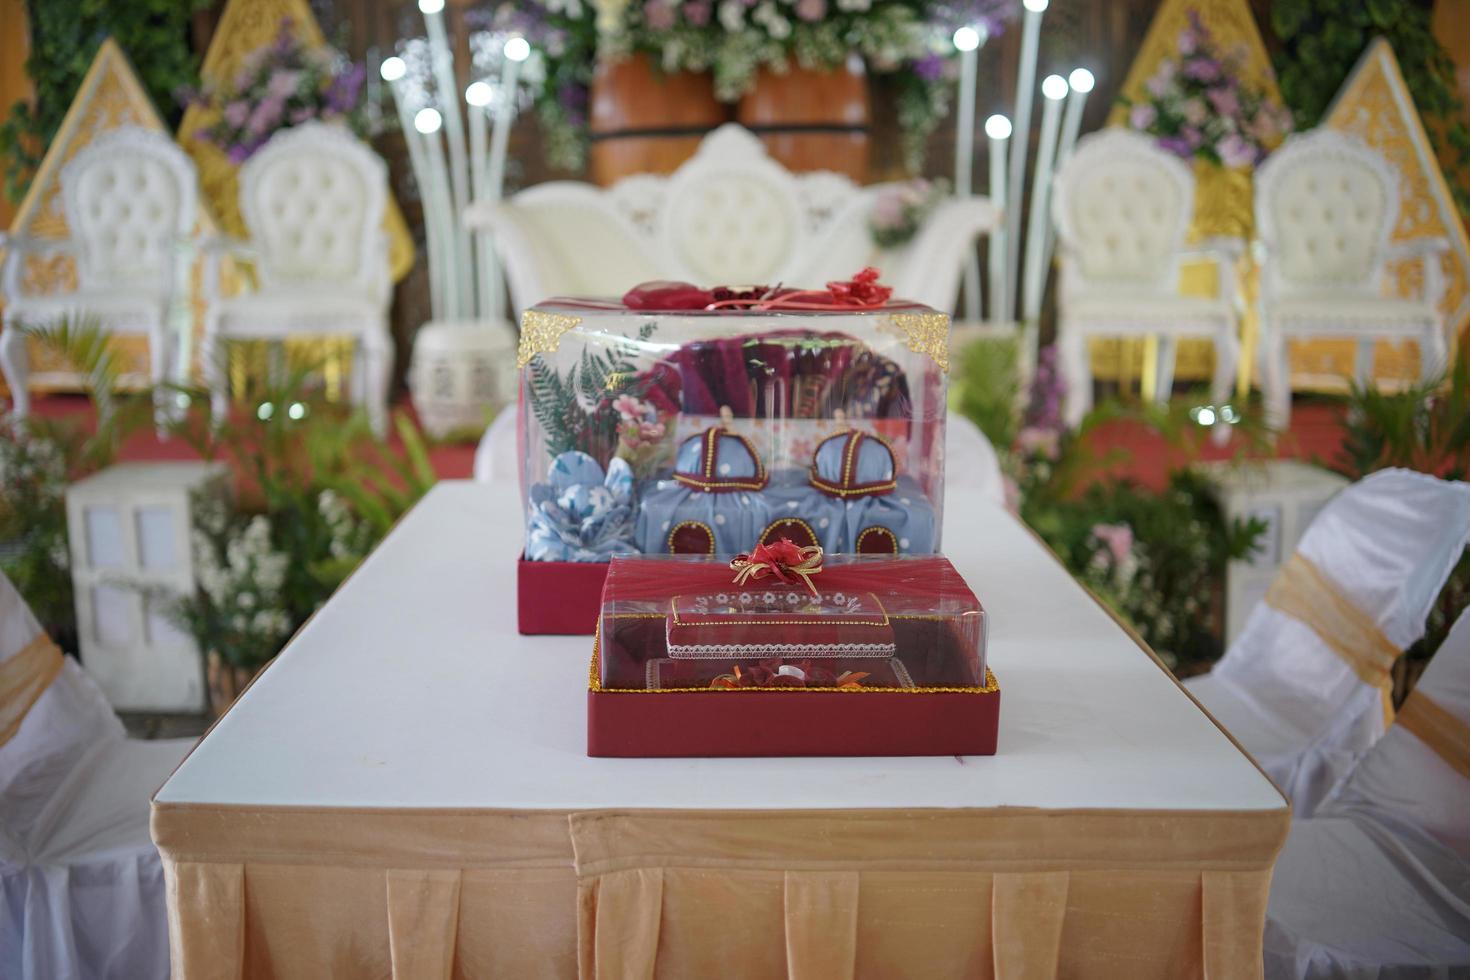 dekorationsanordnungsraum für eine traditionelle hochzeitszeremonie in indonesien foto